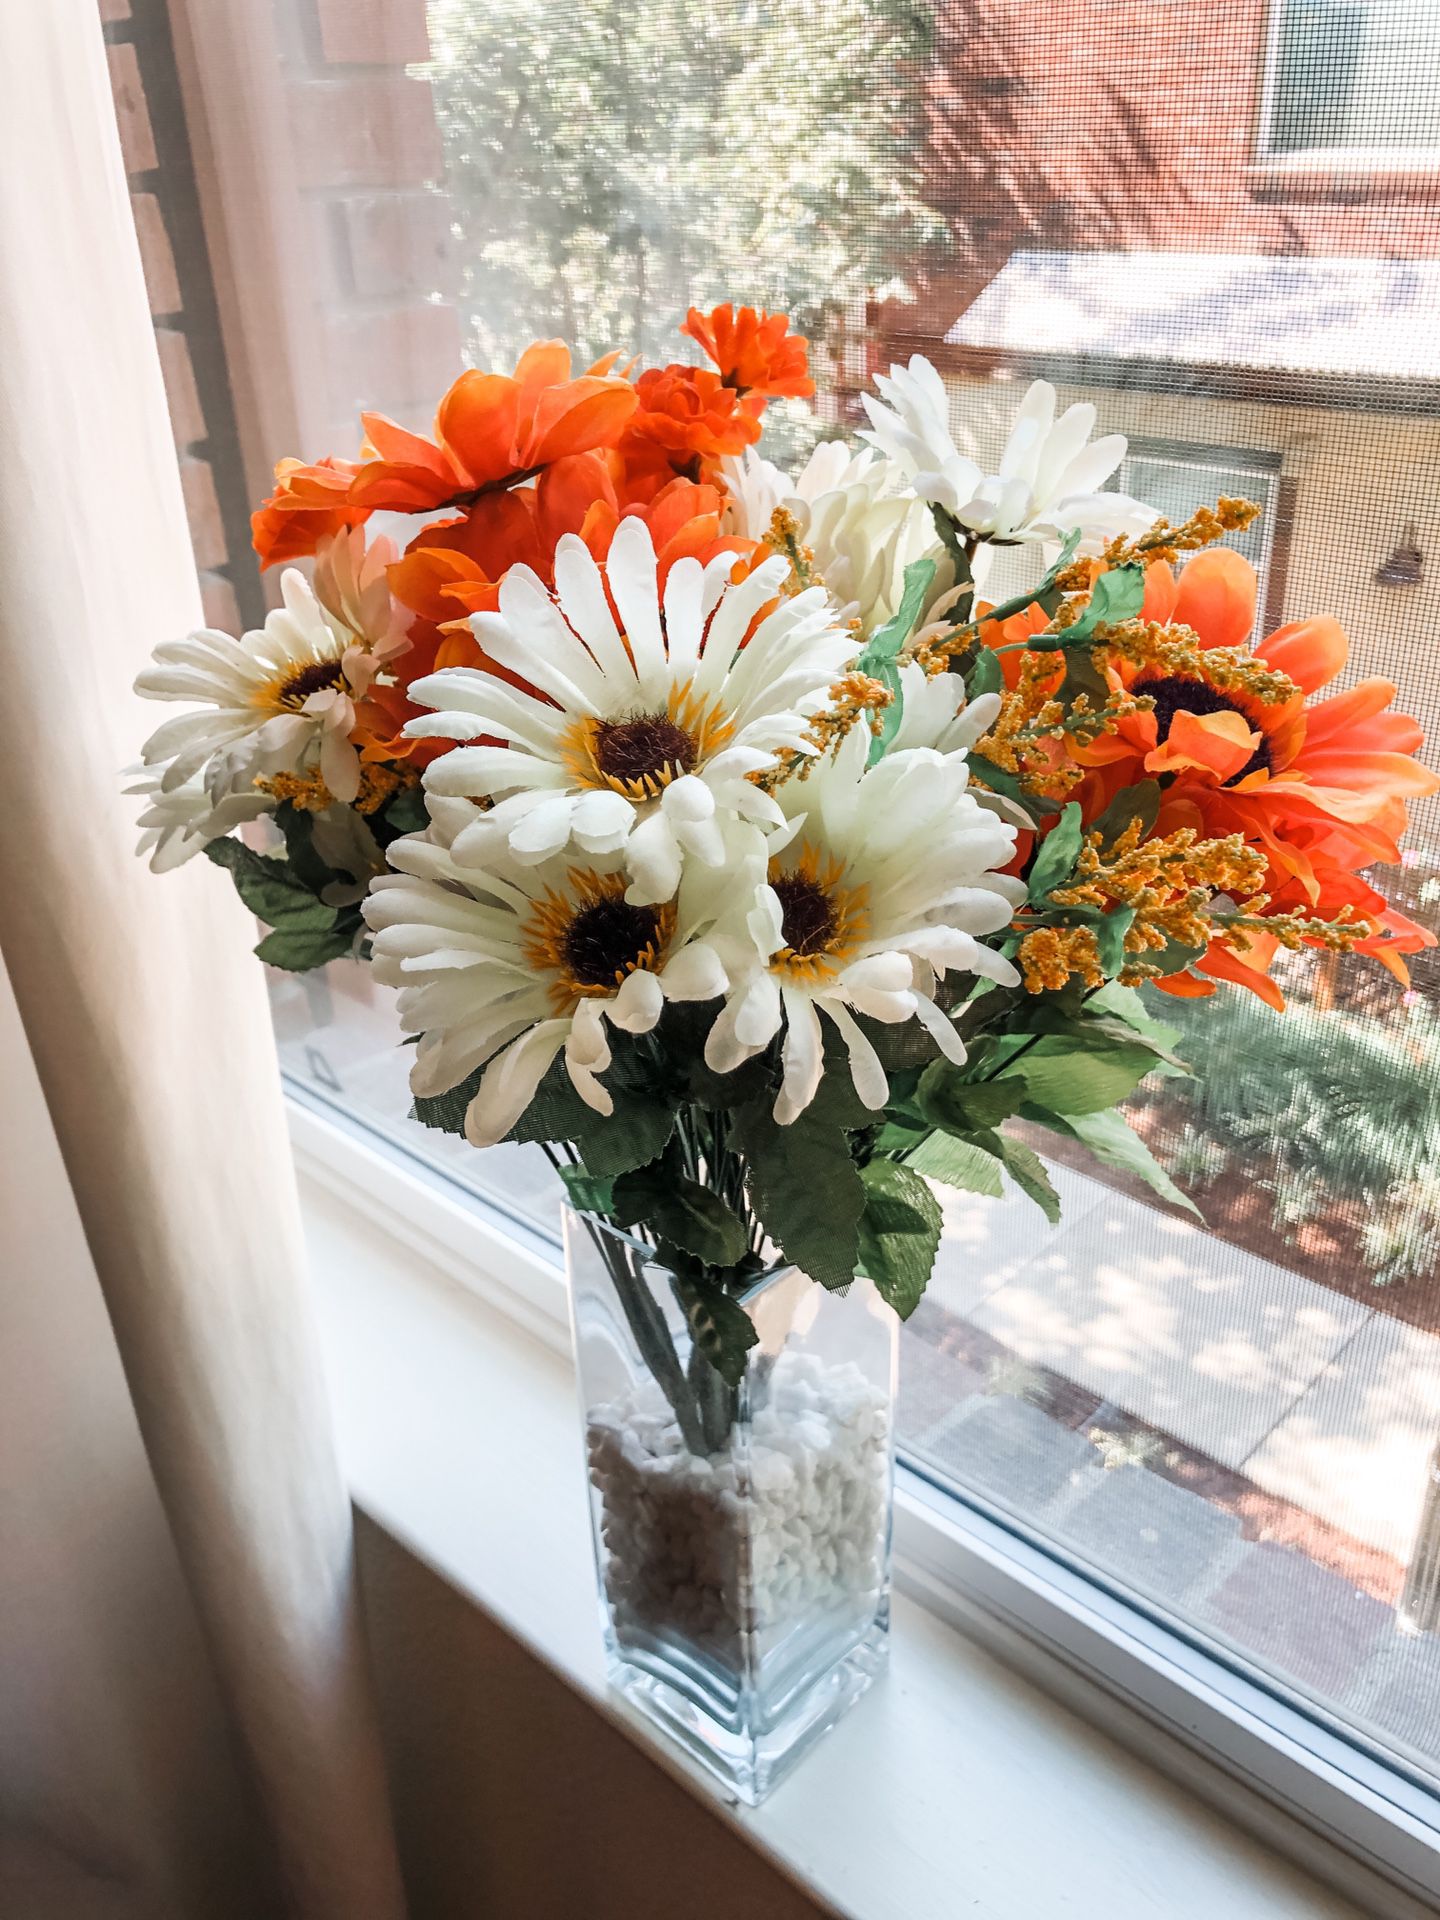 Large Artificial Flower Bouquet Arrangement With Glass Vase Orange & White